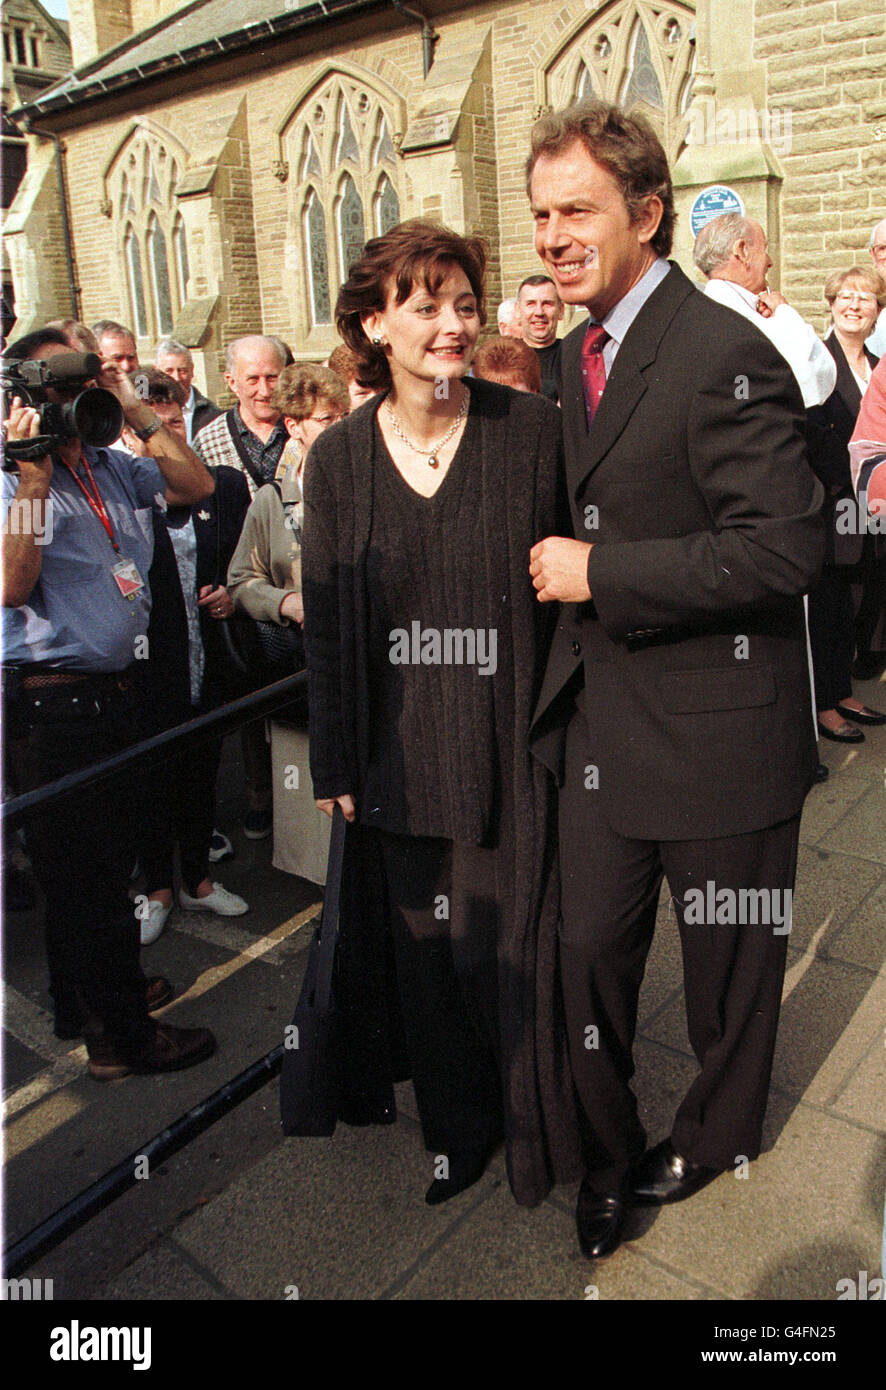 Premierminister Tony Blair verlässt heute (Sonntag) in Begleitung seiner Frau Cherie die Konferenz der Labour Party Ökumenischer Gottesdienst in der Church of the Sacred Heart in Blackpool. Bild von Ben Curtis/PA Stockfoto